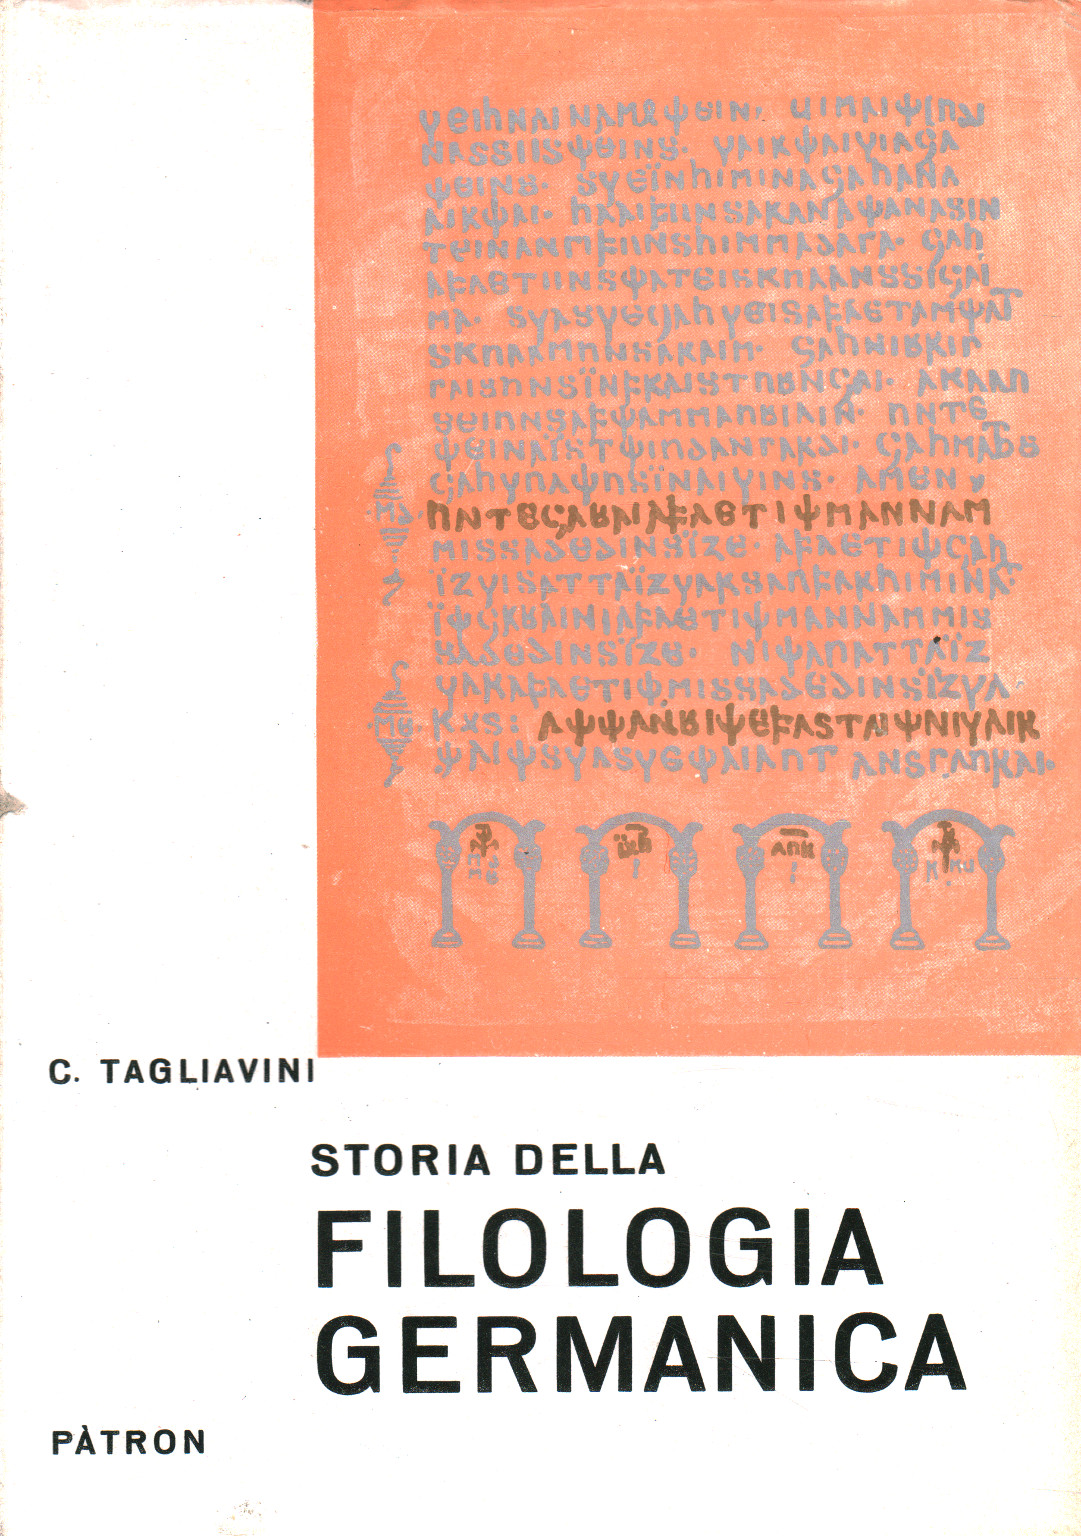 Panorama de l'histoire de la philologie germanique, Carlo Tagliavini